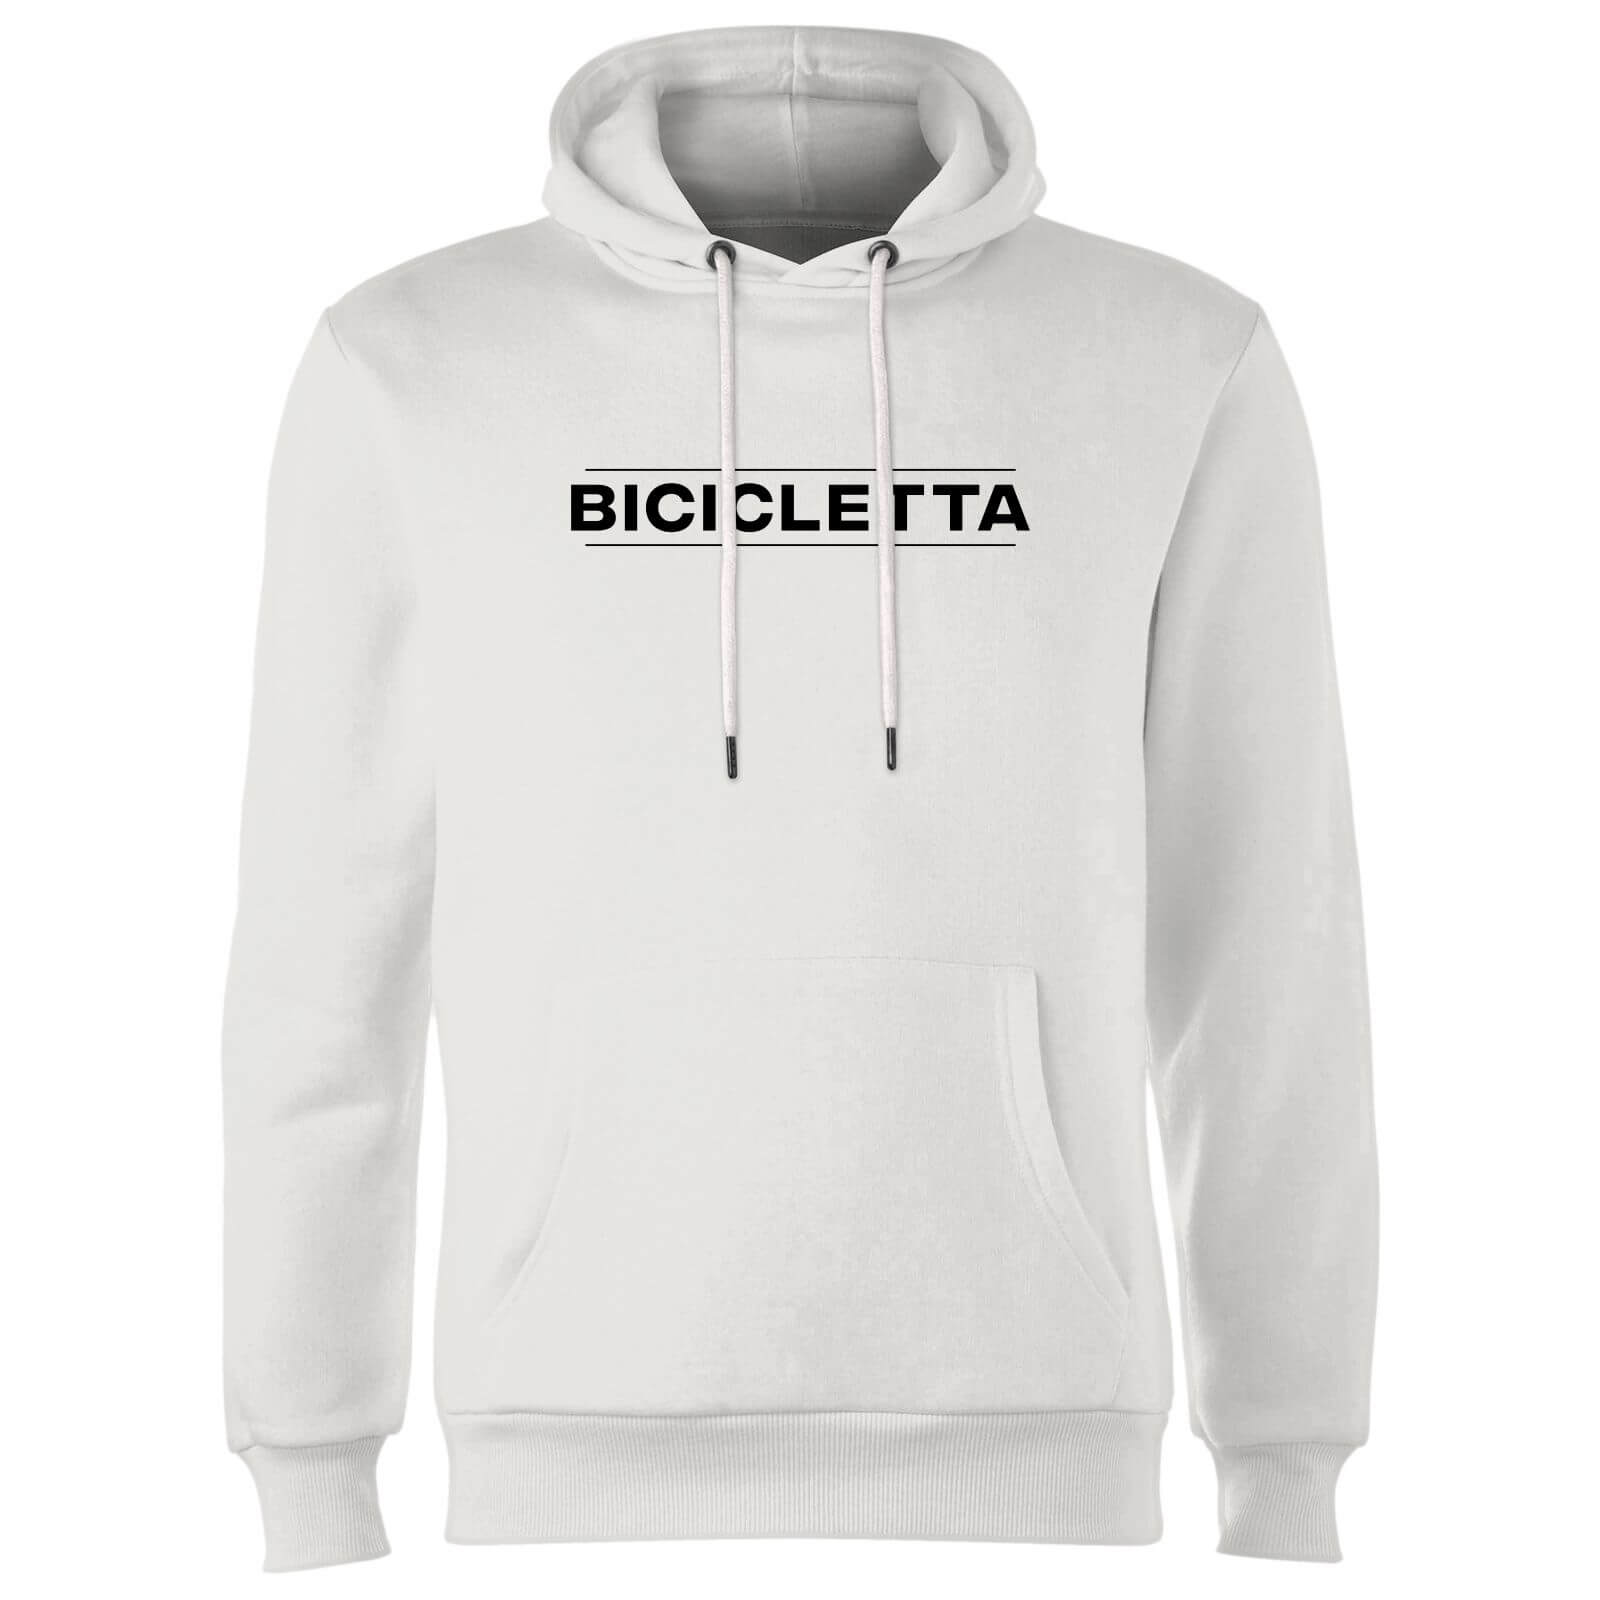 Bicicletta Hoodie - White - S - Weiß